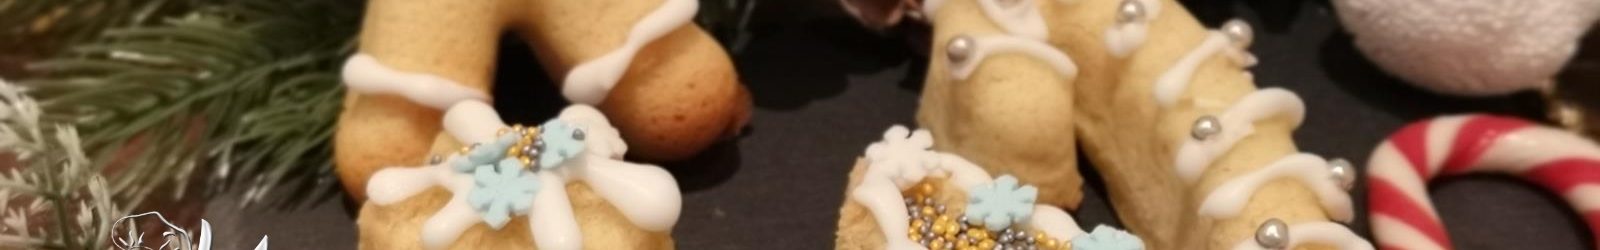 Biscotti frolle montate all’anice stellato per Natale la ricetta